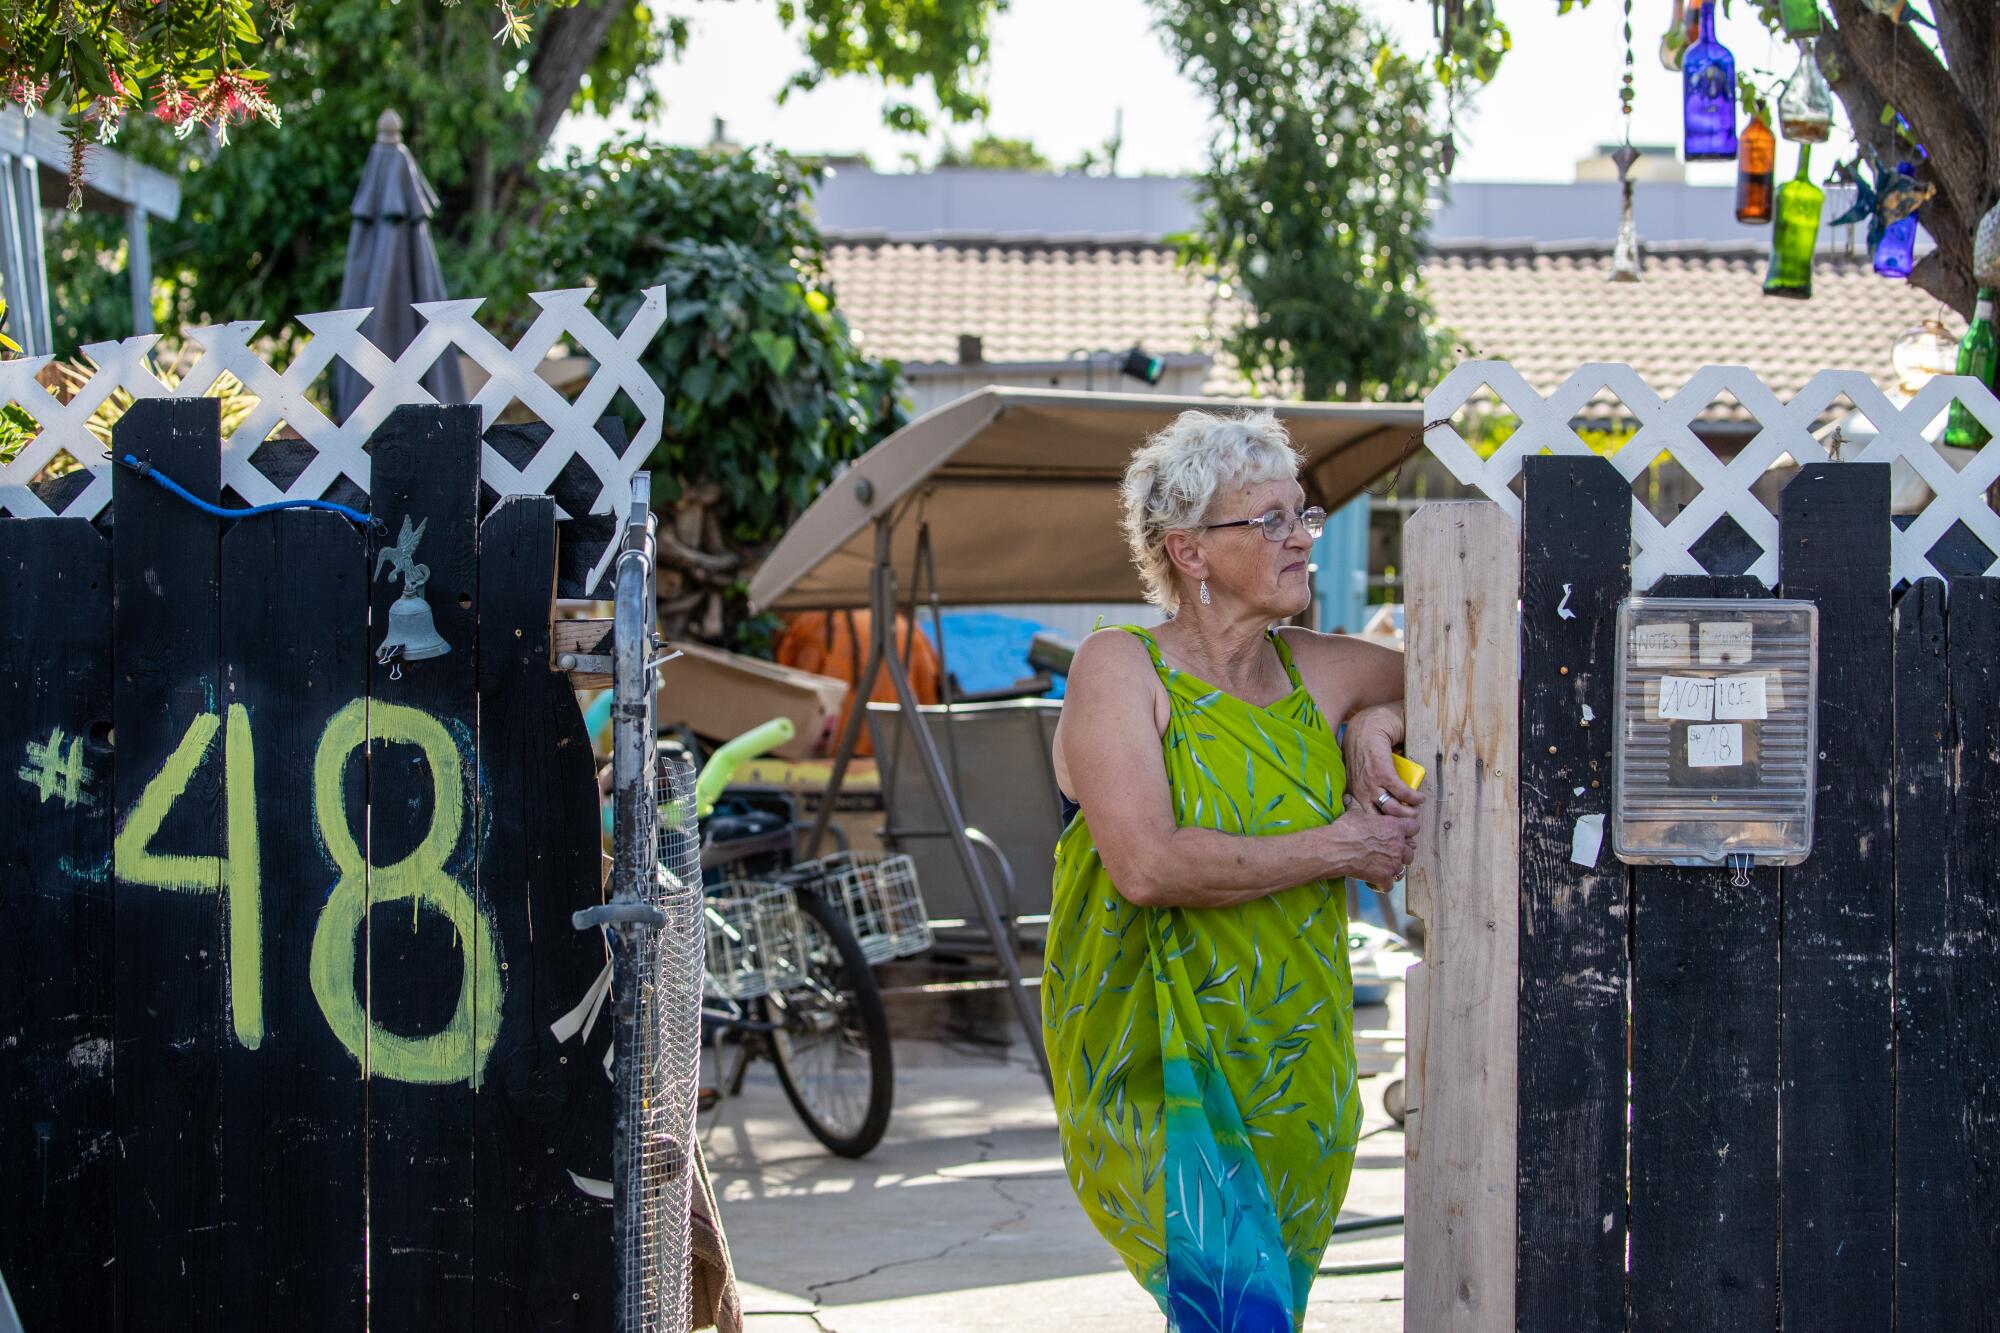 Patricia Shawn, 59, who lives in single wide mobile home since 1998 in La Hacienda Mobile Estate